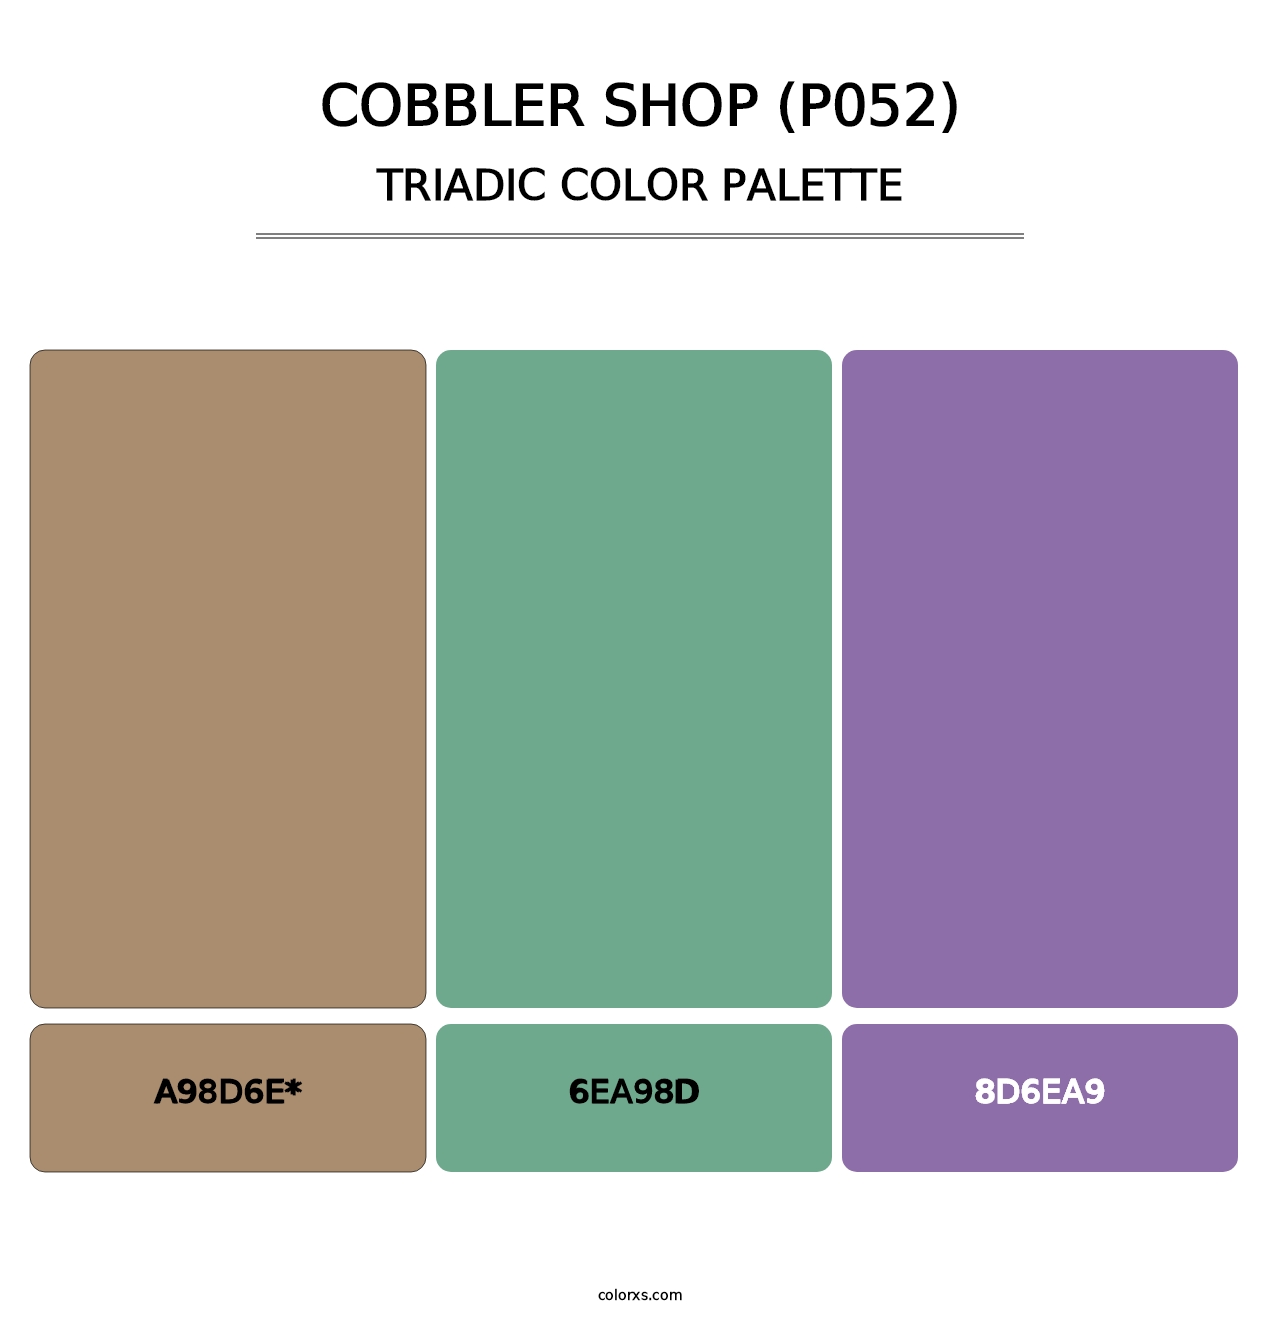 Cobbler Shop (P052) - Triadic Color Palette